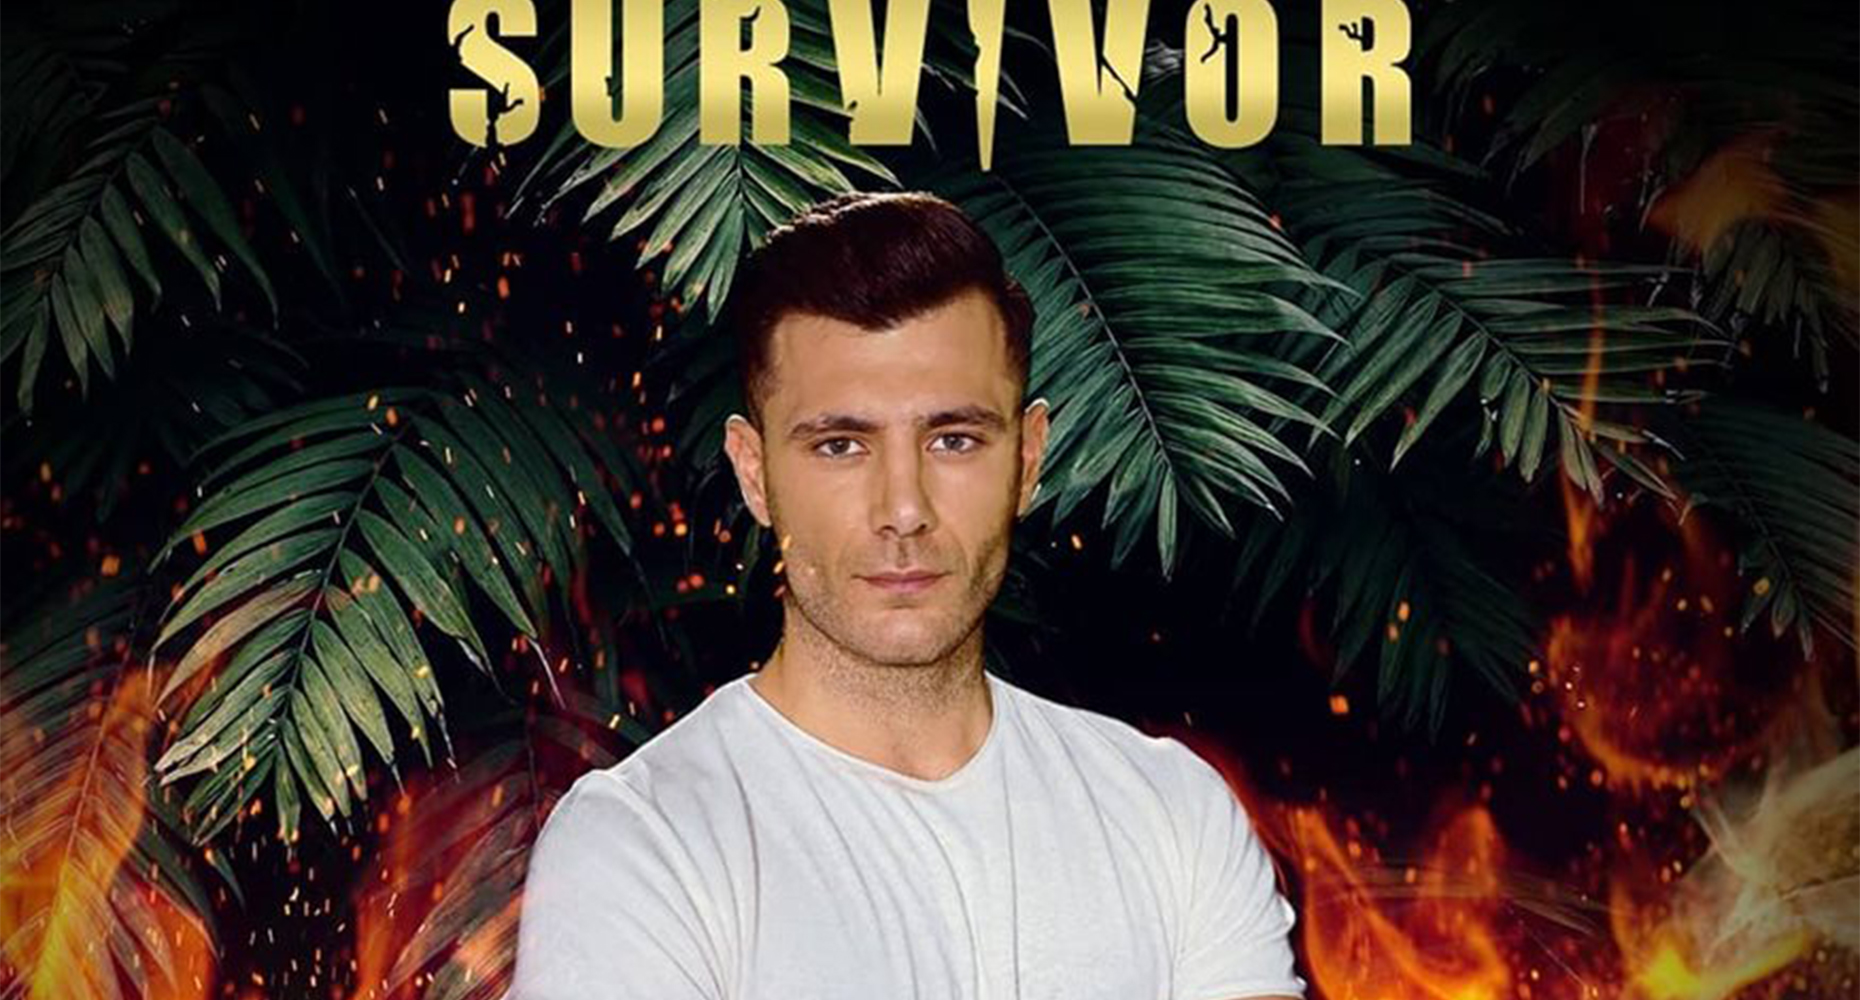 Survivor Νίκος Μπάρτζης παίκτης από το Ζευγολατιό Κορινθίας